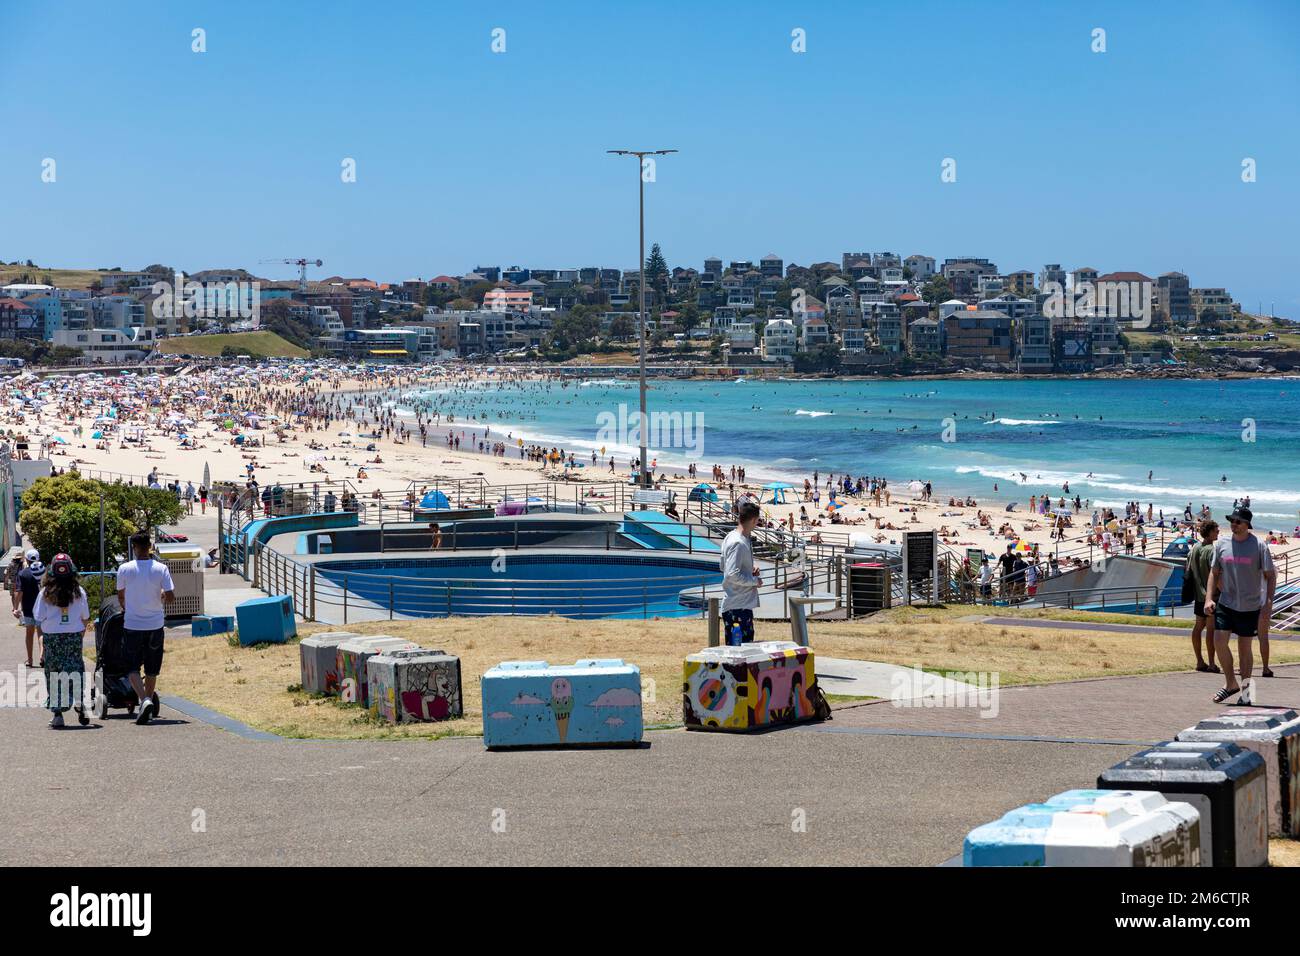 Bondi Beach Sydney, des blocs de béton peints et décorés pour prévenir les menaces de terrorisme ou les personnes qui se conduisent dans la foule sur la plage, Sydney, Australie Banque D'Images